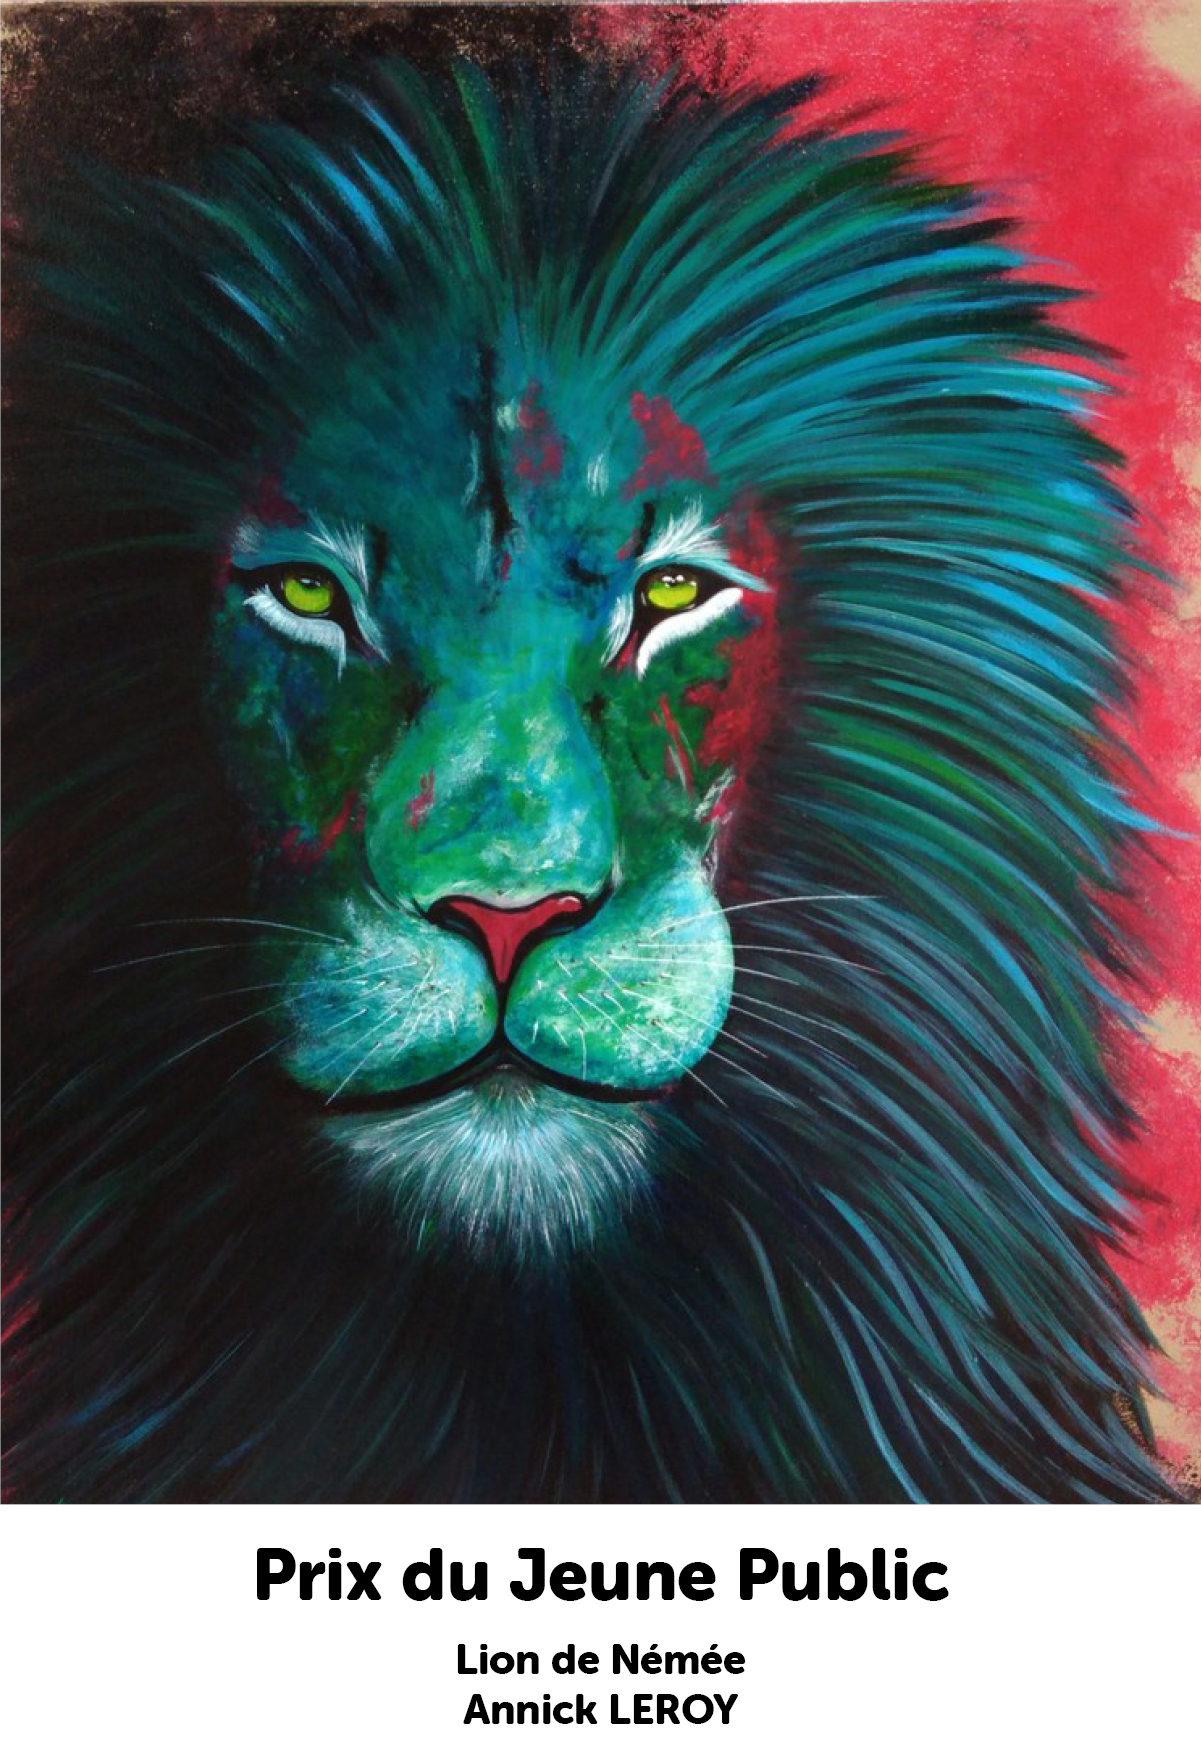 Lion de Némée Annick LEROY